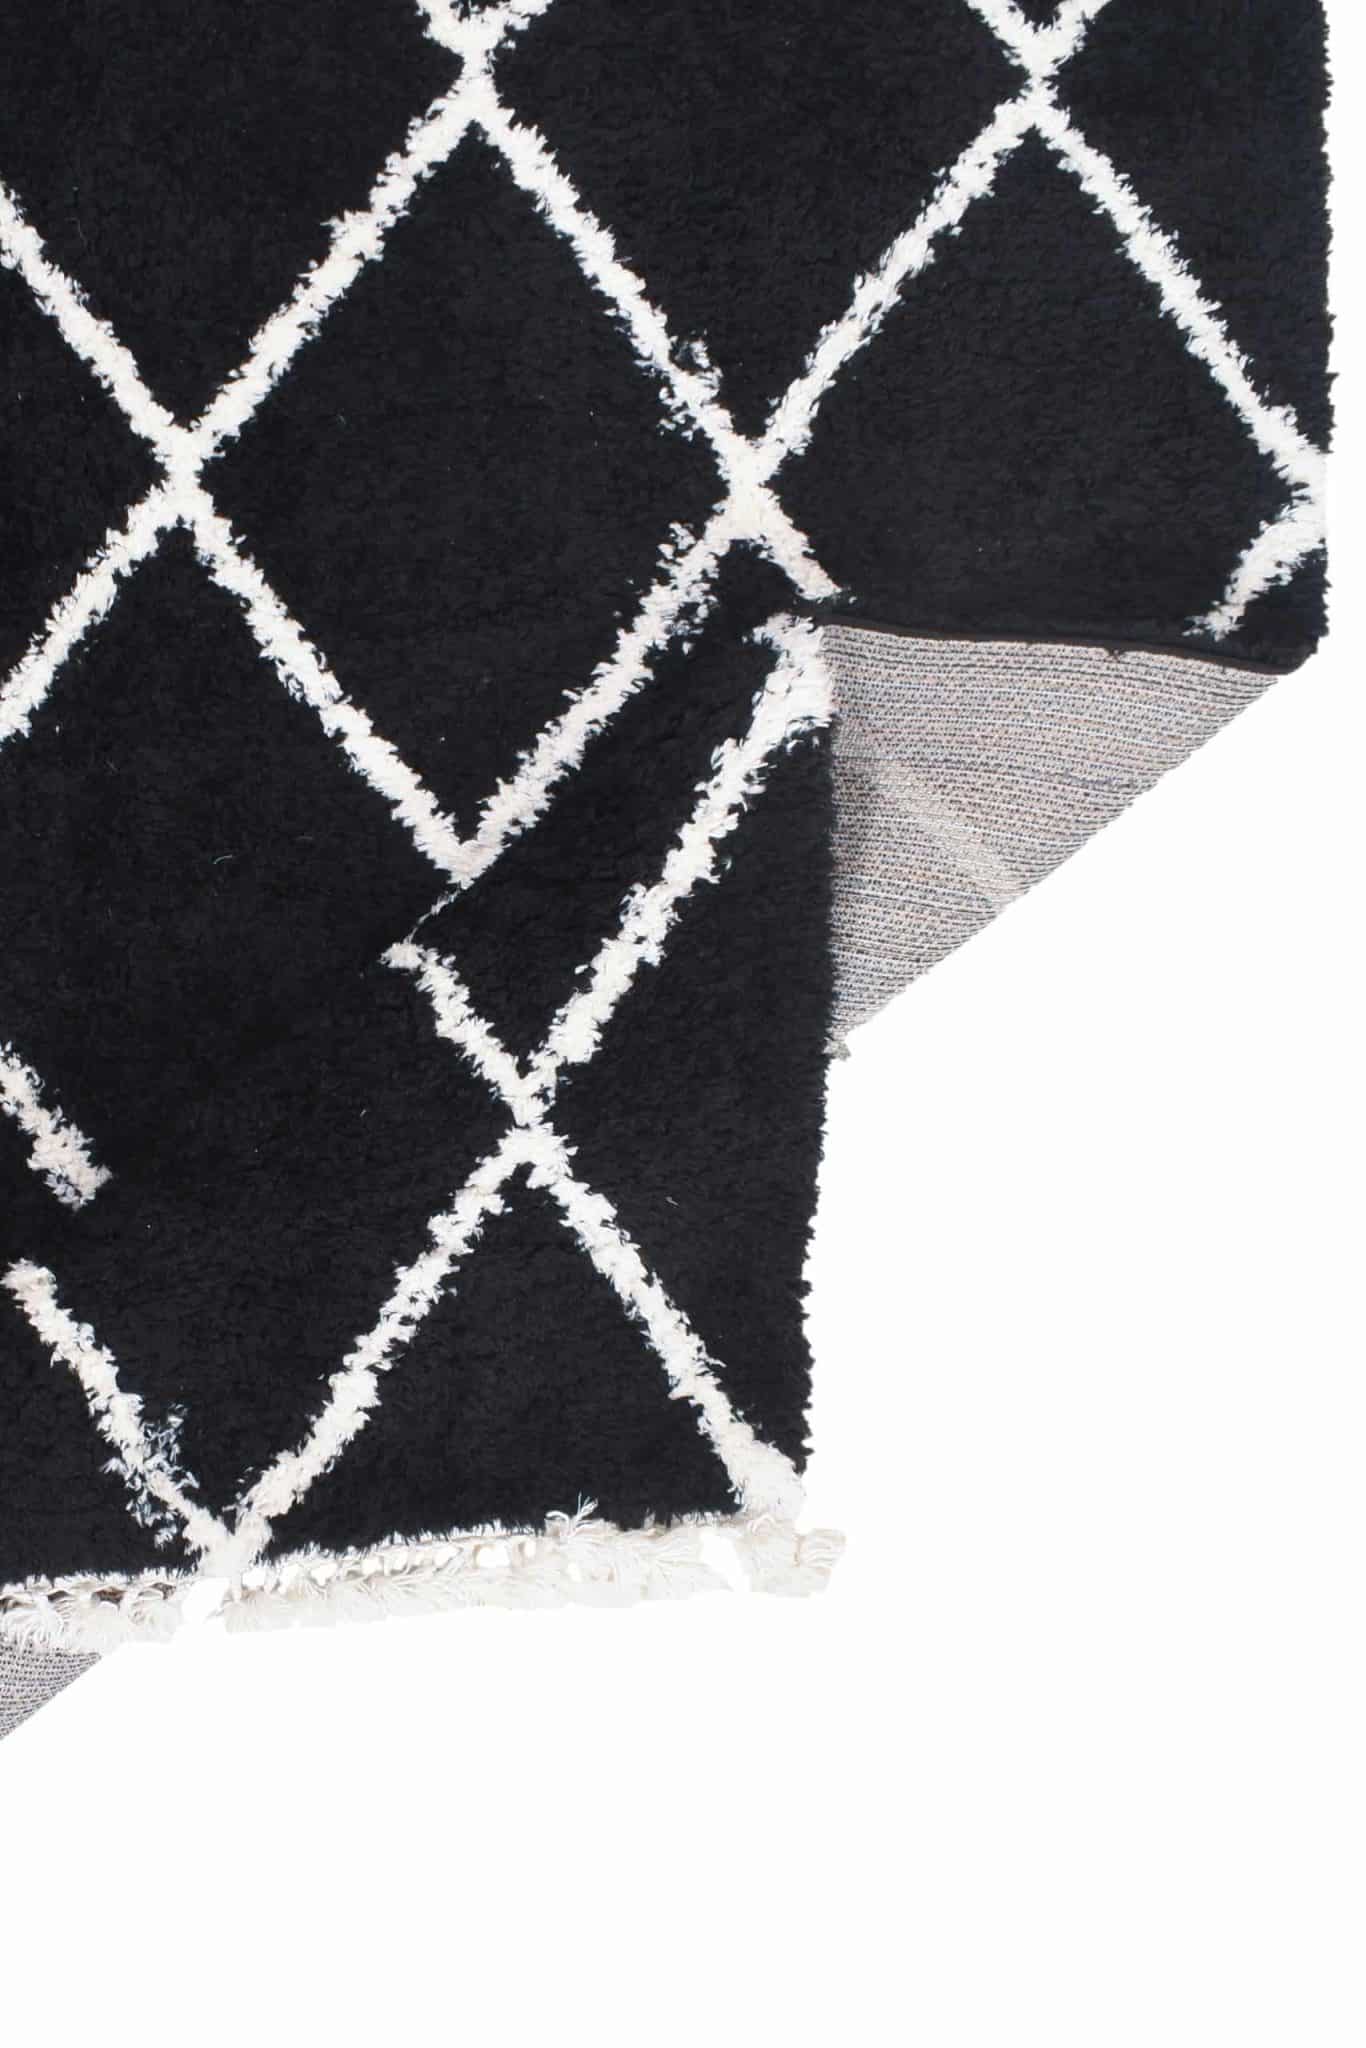 שטיח ברבר אריגה שחור